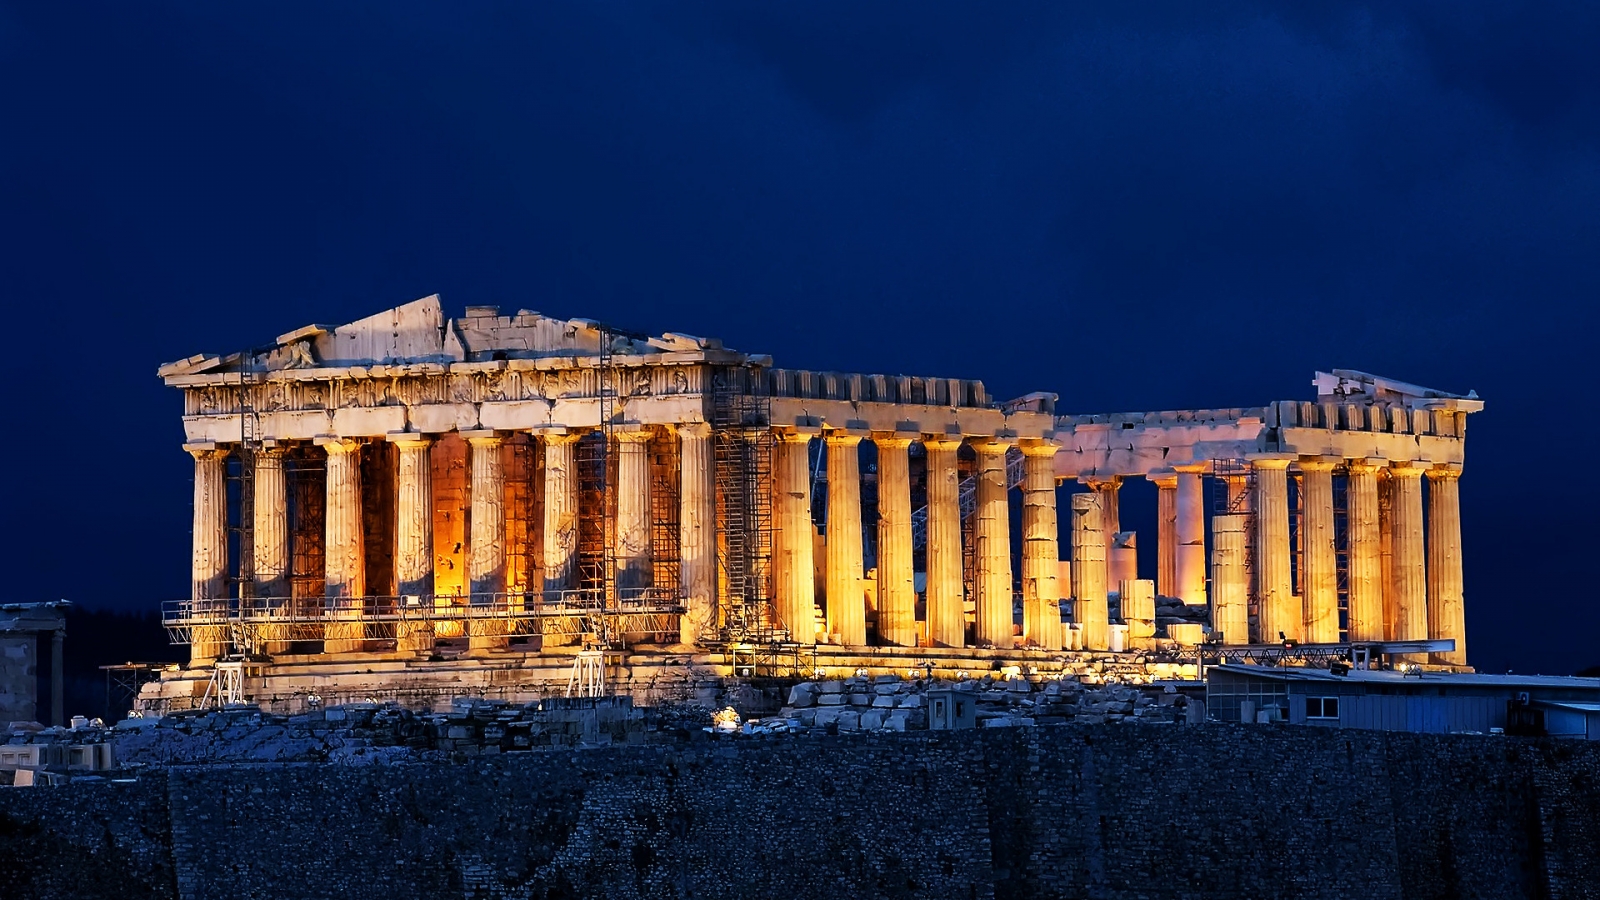 Parthenon Acropolis Athens for 1600 x 900 HDTV resolution